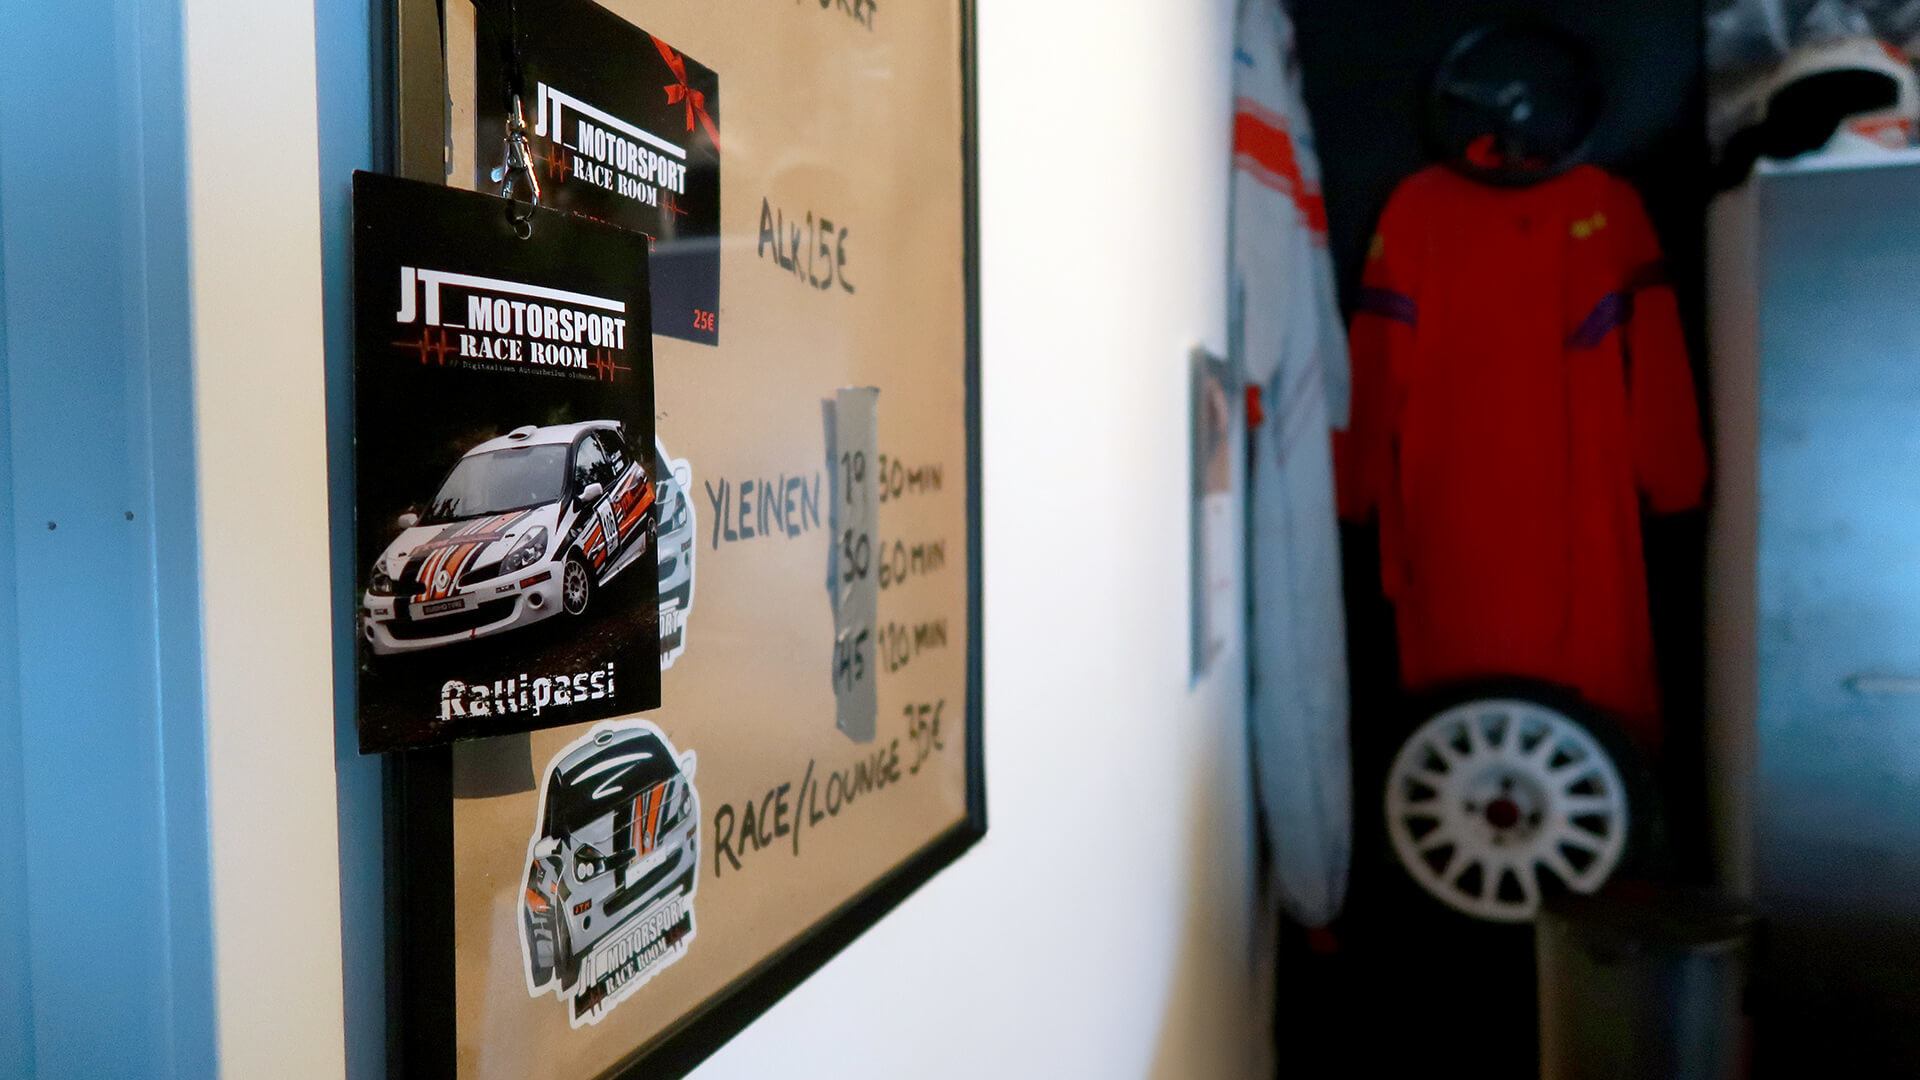 Yksityiskohta Race Roomin myyntitiskiltä. Kuvassa näkyy hinnasto, rallipassi sekä taustalla ajoasuja ja ralliauton rengas.